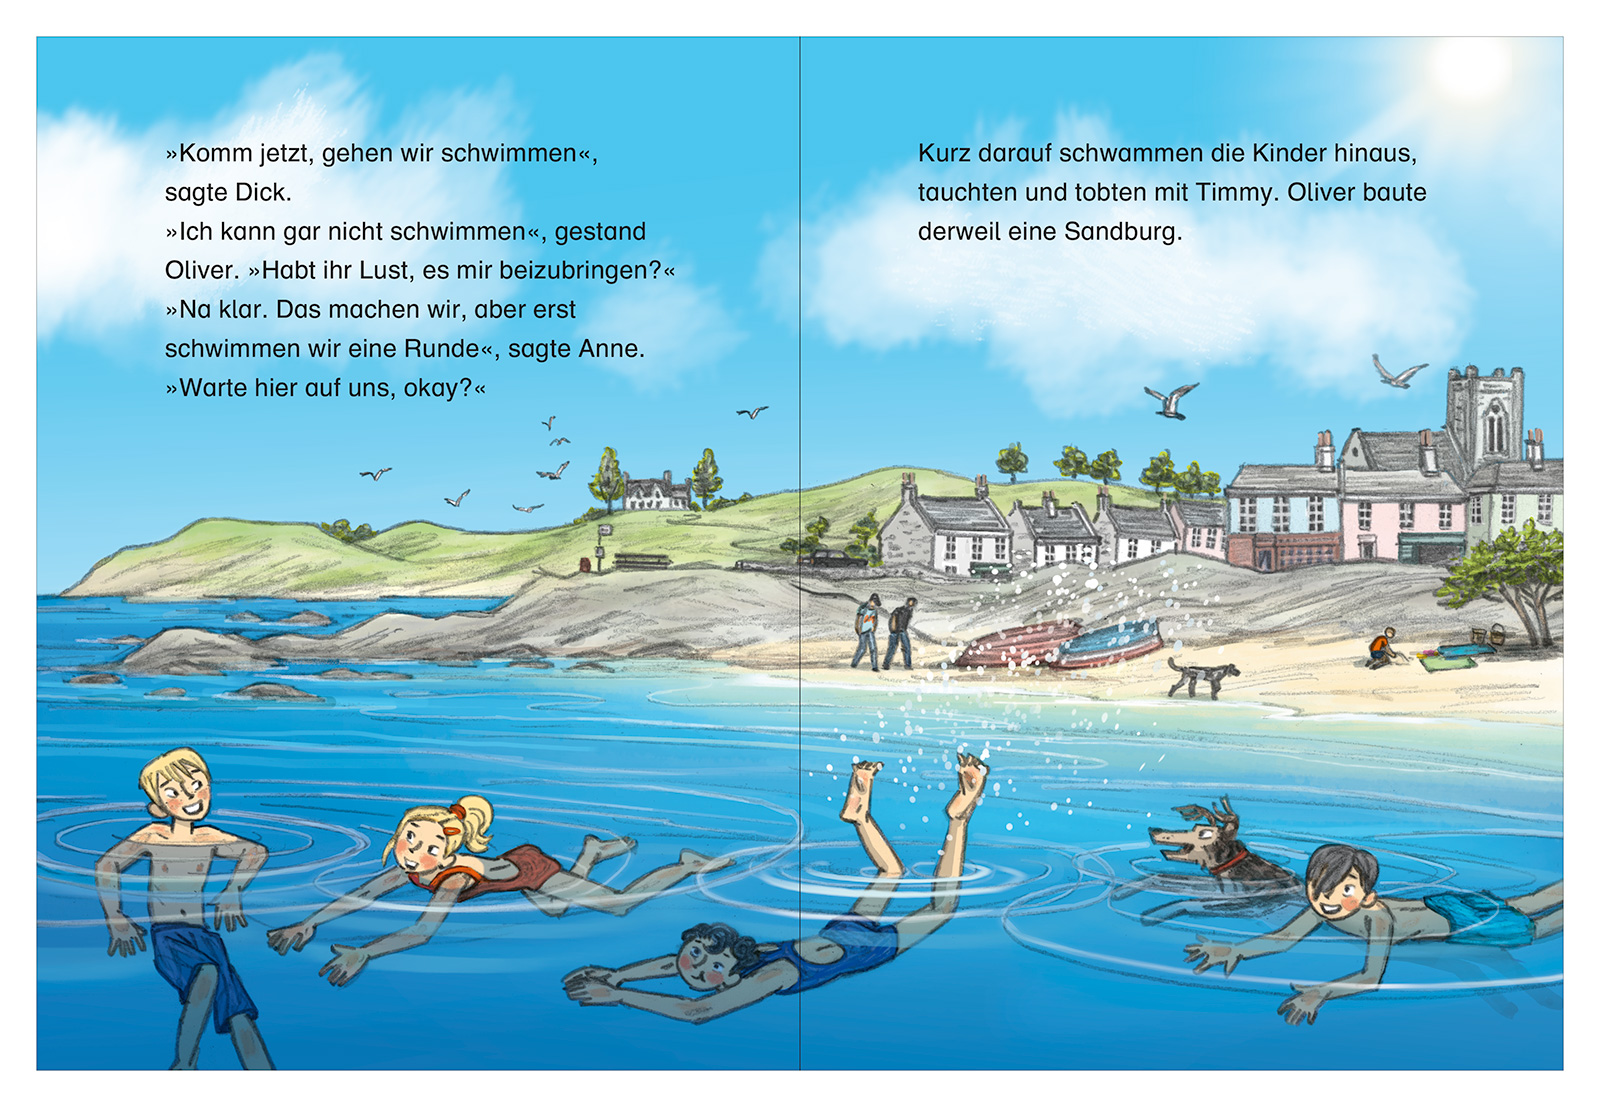 4 Kinder und ein Hund baden im Meer. Im Hintergrund ist eine typische englische Kleinstadt zu sehen.